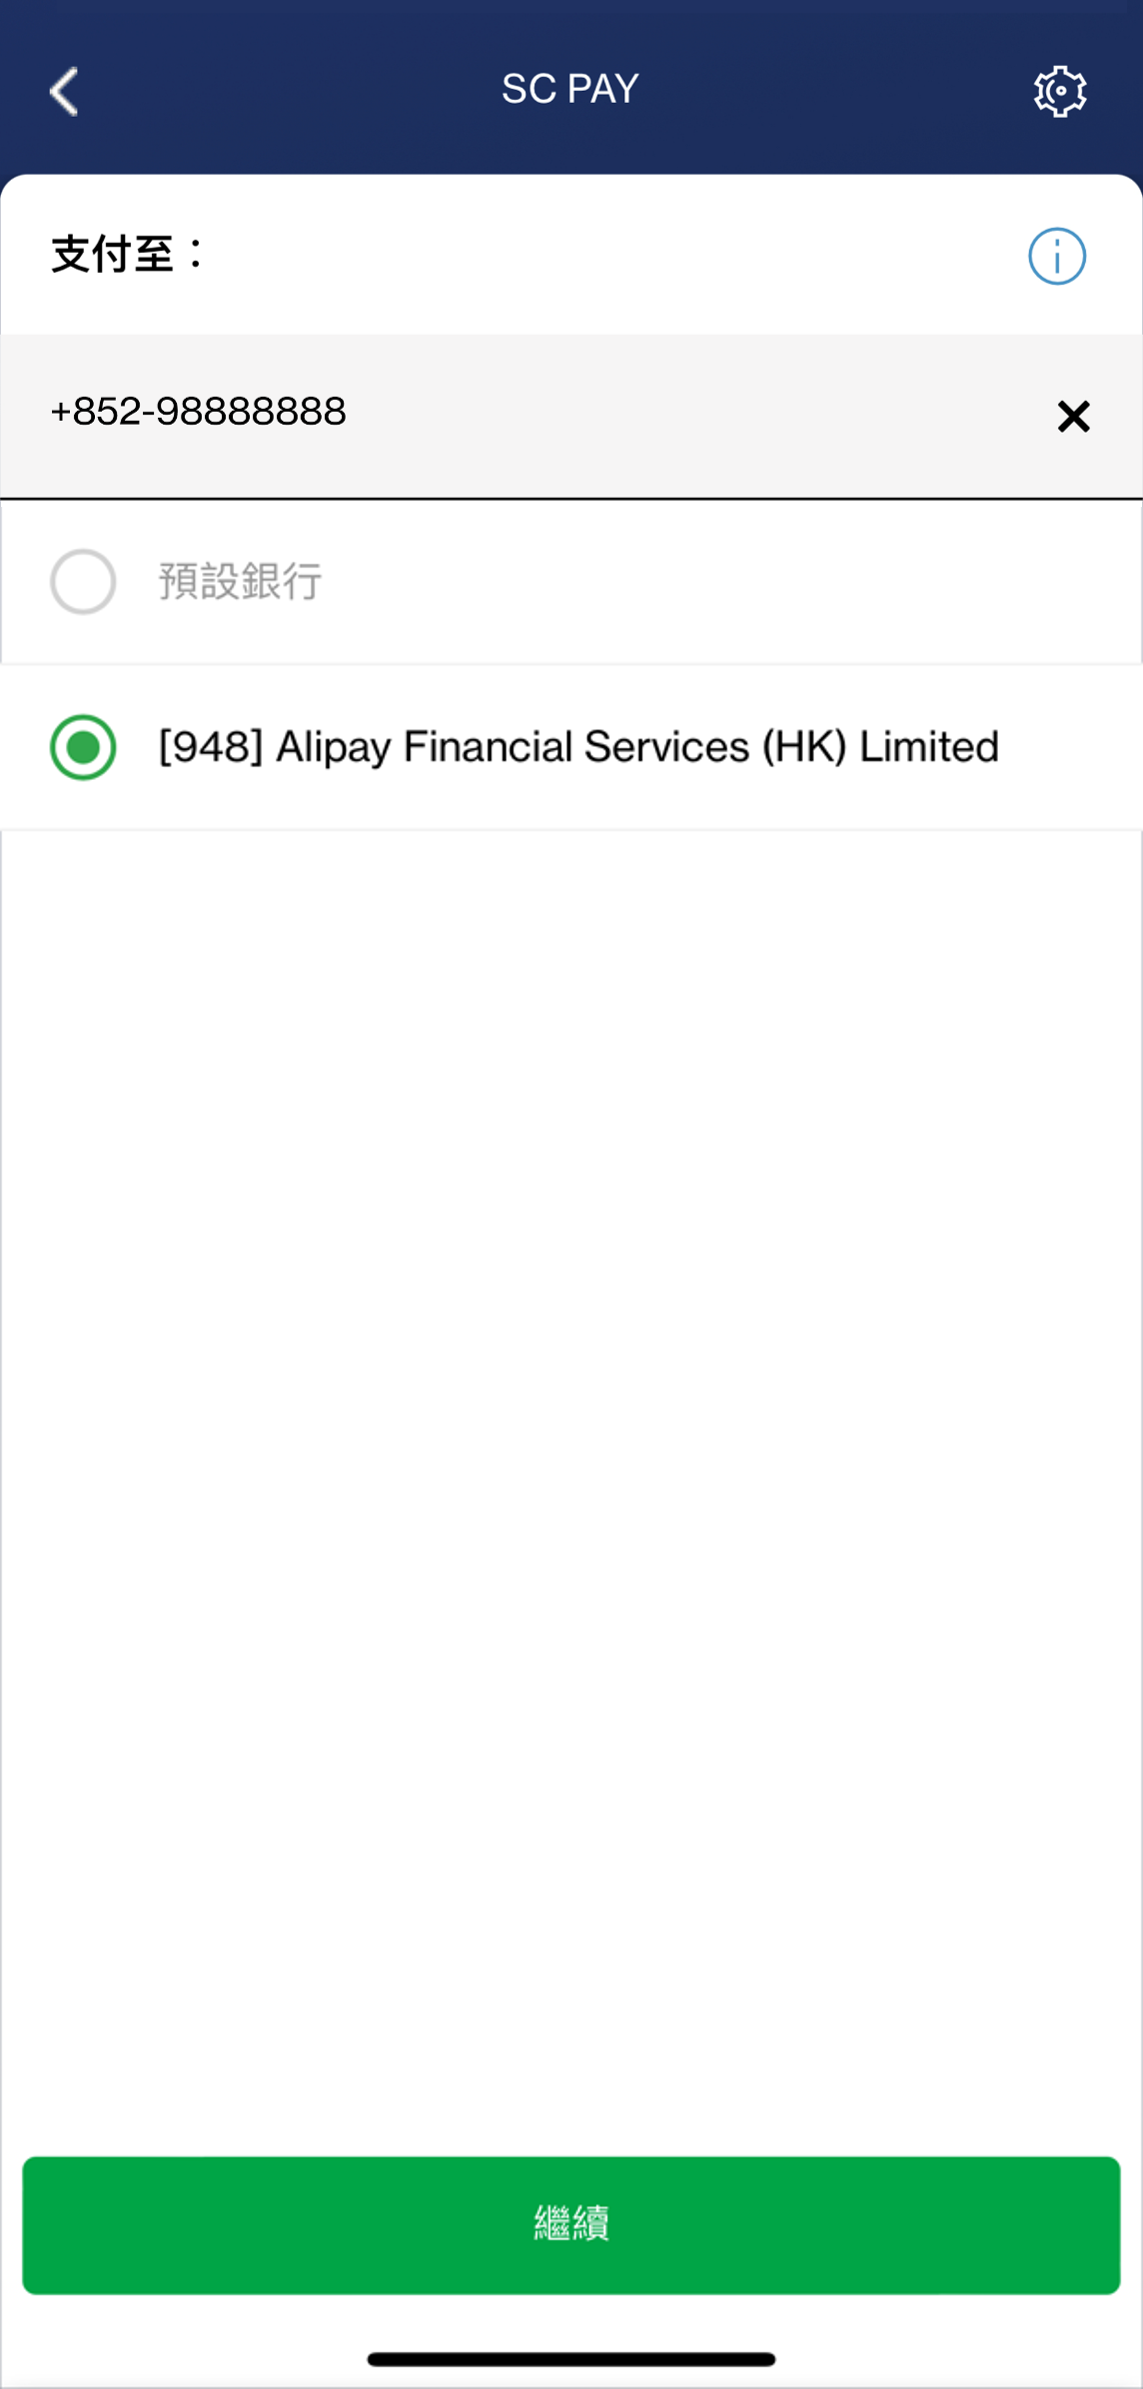 輸入步驟1時於AlipayHK登記轉數快的香港流動電話號碼｡ 如AlipayHK是您的轉數快預設收款銀行，請選擇「預設銀行」。否則請選擇「指定銀行」及「[948] Alipay Financial Services (HK) Limited 」